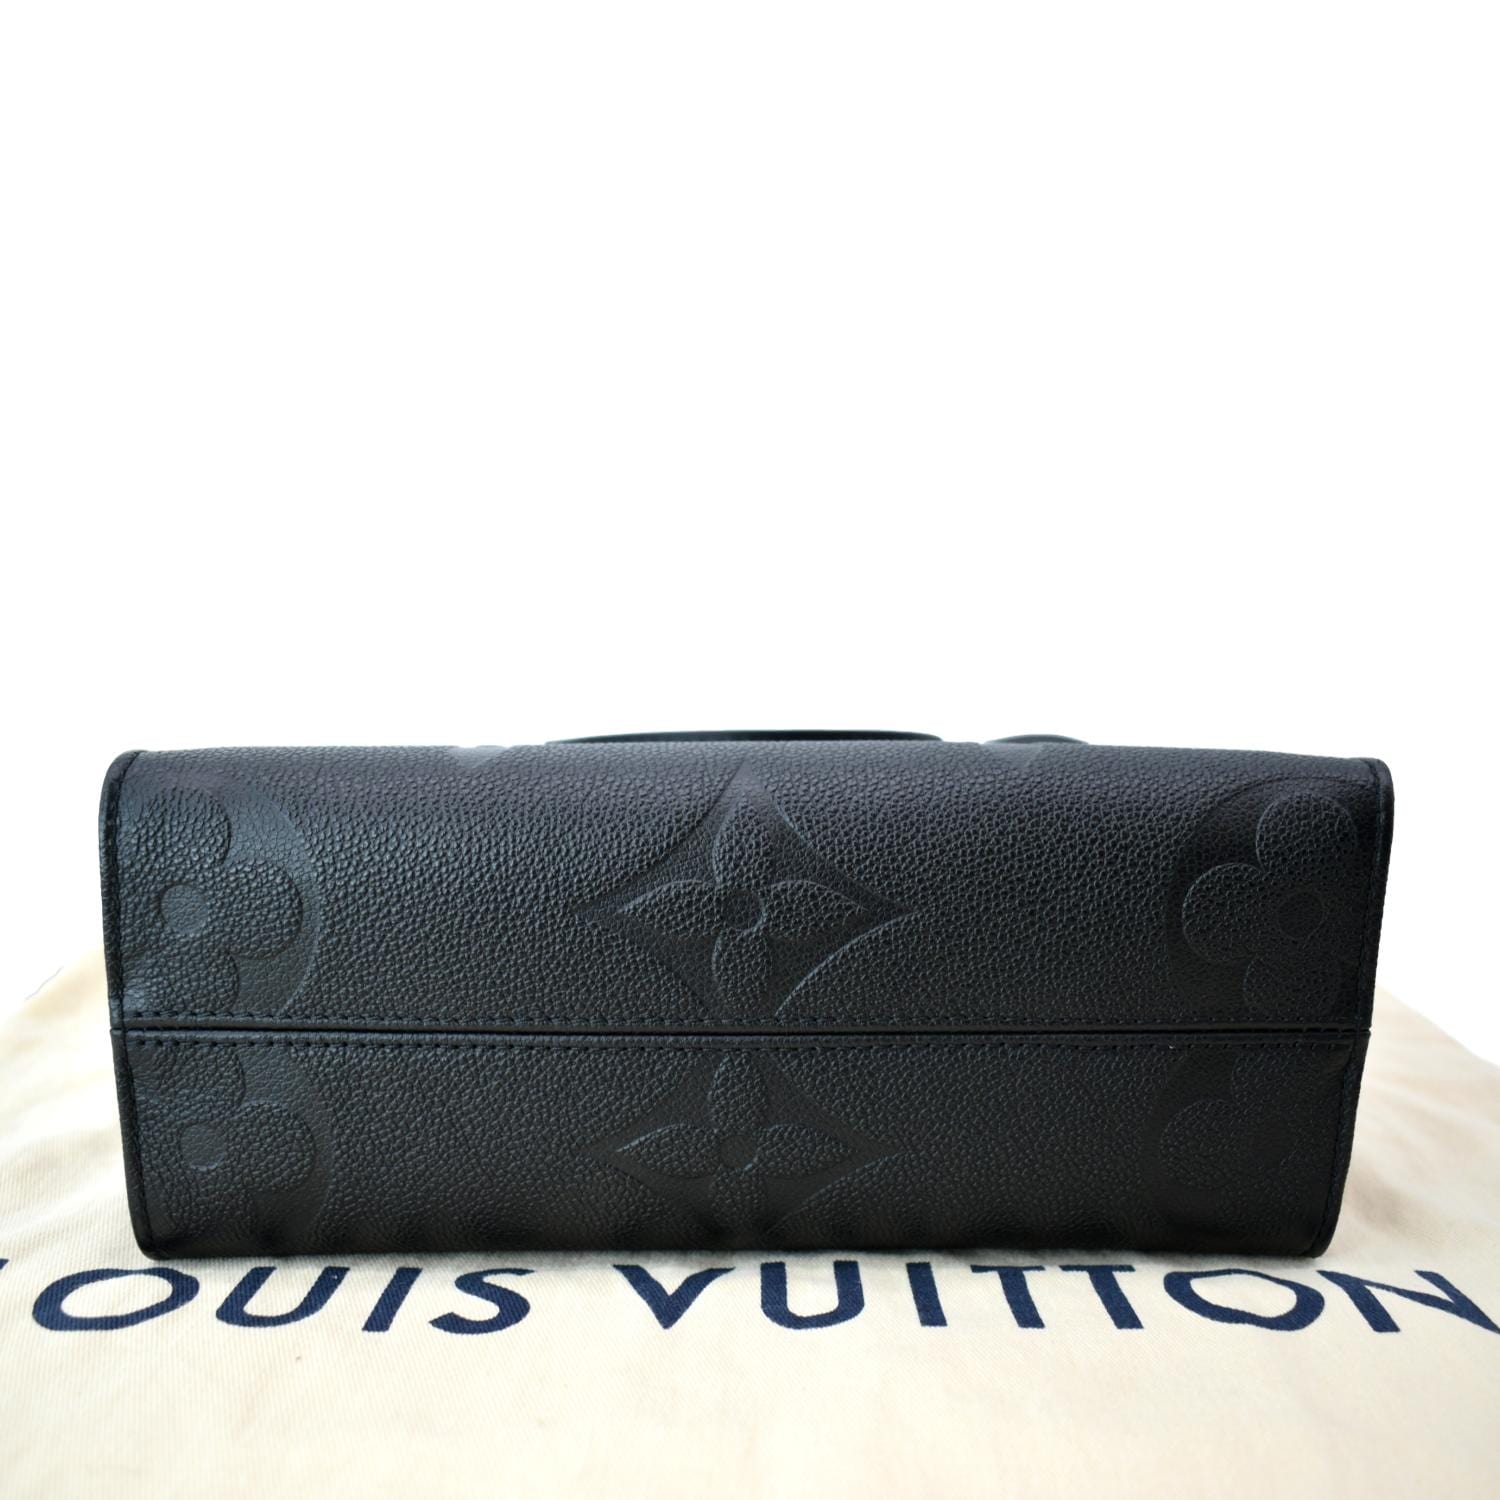 Louis Vuitton - Onthego PM Tote Bag - Black - Monogram Leather - Women - Luxury